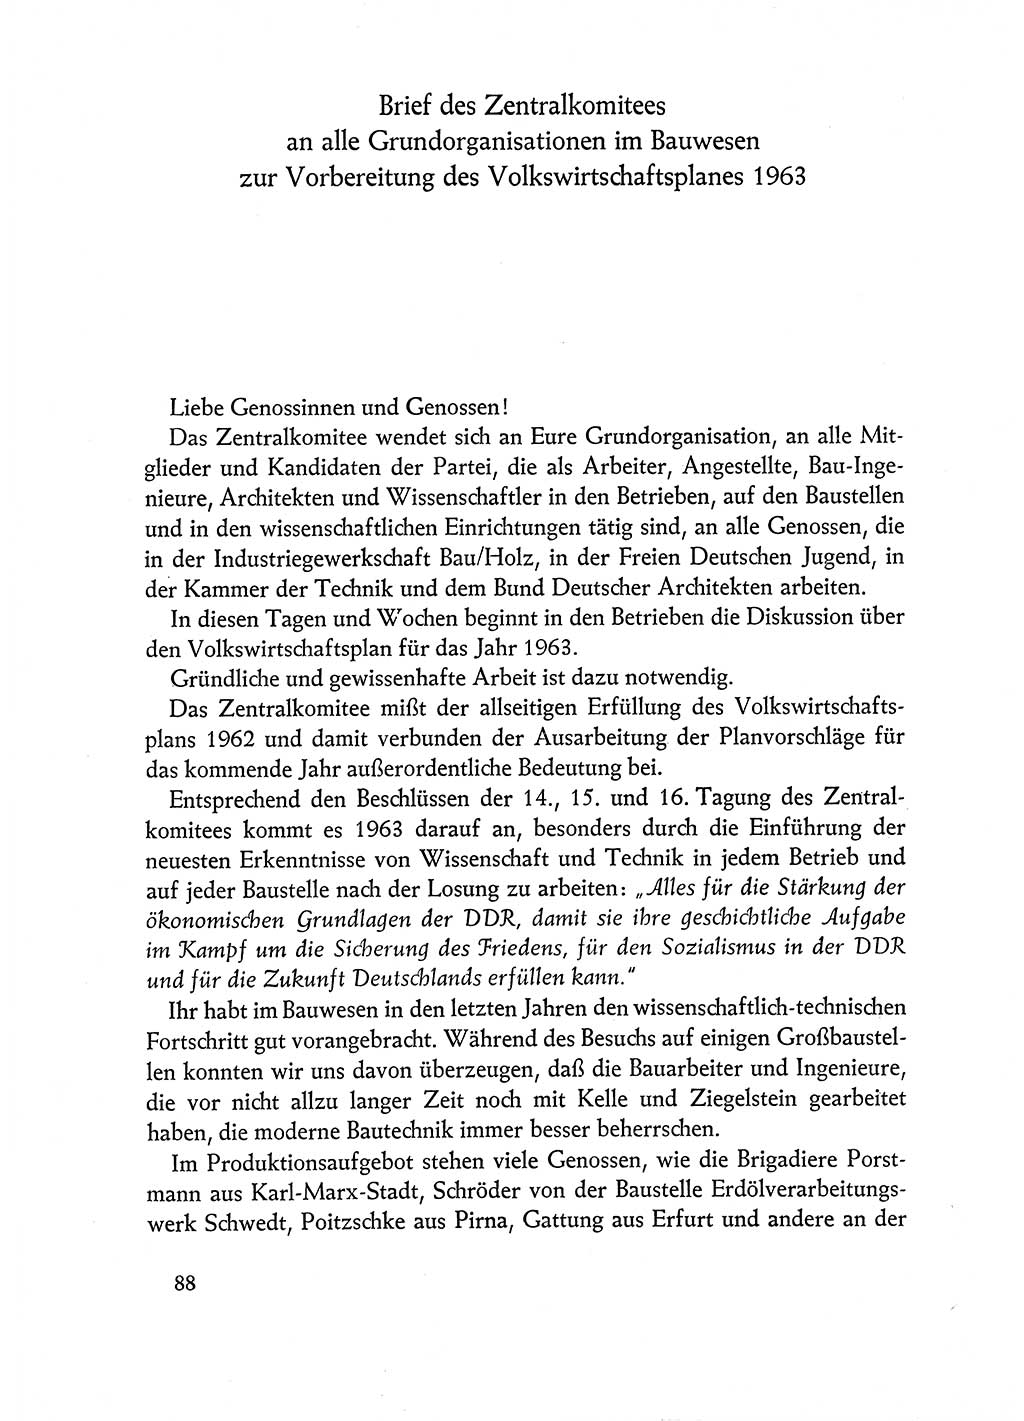 Dokumente der Sozialistischen Einheitspartei Deutschlands (SED) [Deutsche Demokratische Republik (DDR)] 1962-1963, Seite 88 (Dok. SED DDR 1962-1963, S. 88)